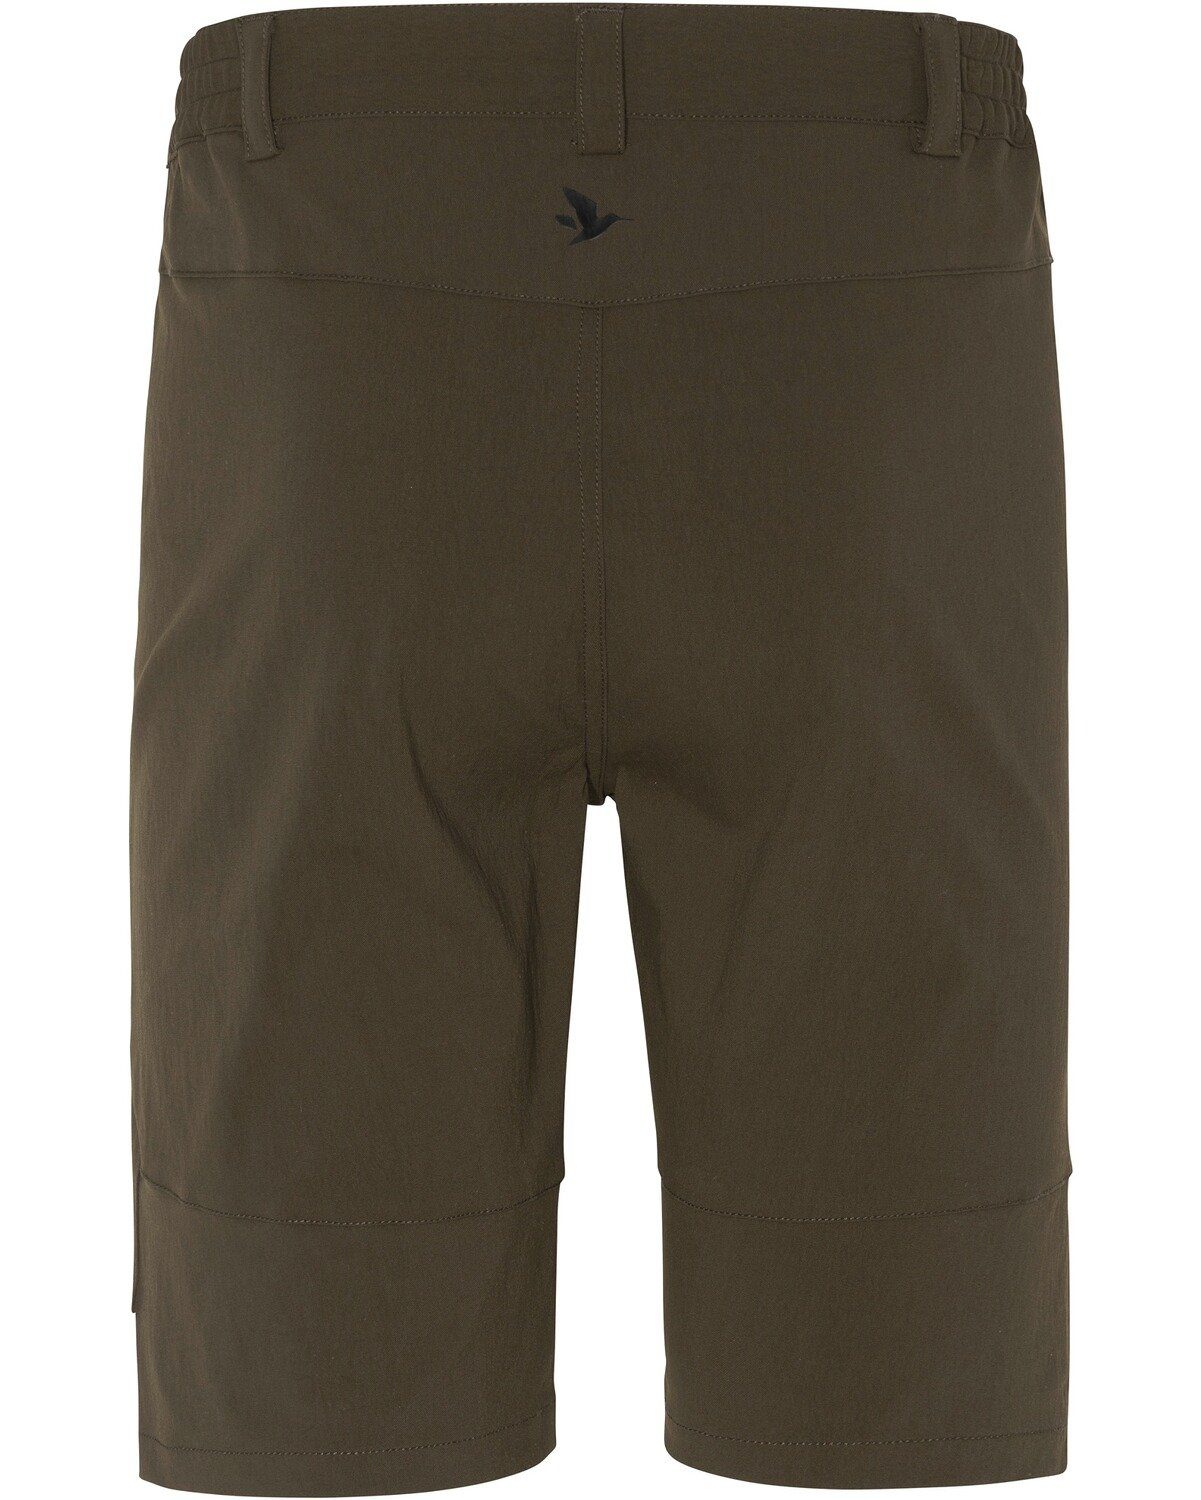 Rowan Shorts Seeland Shorts